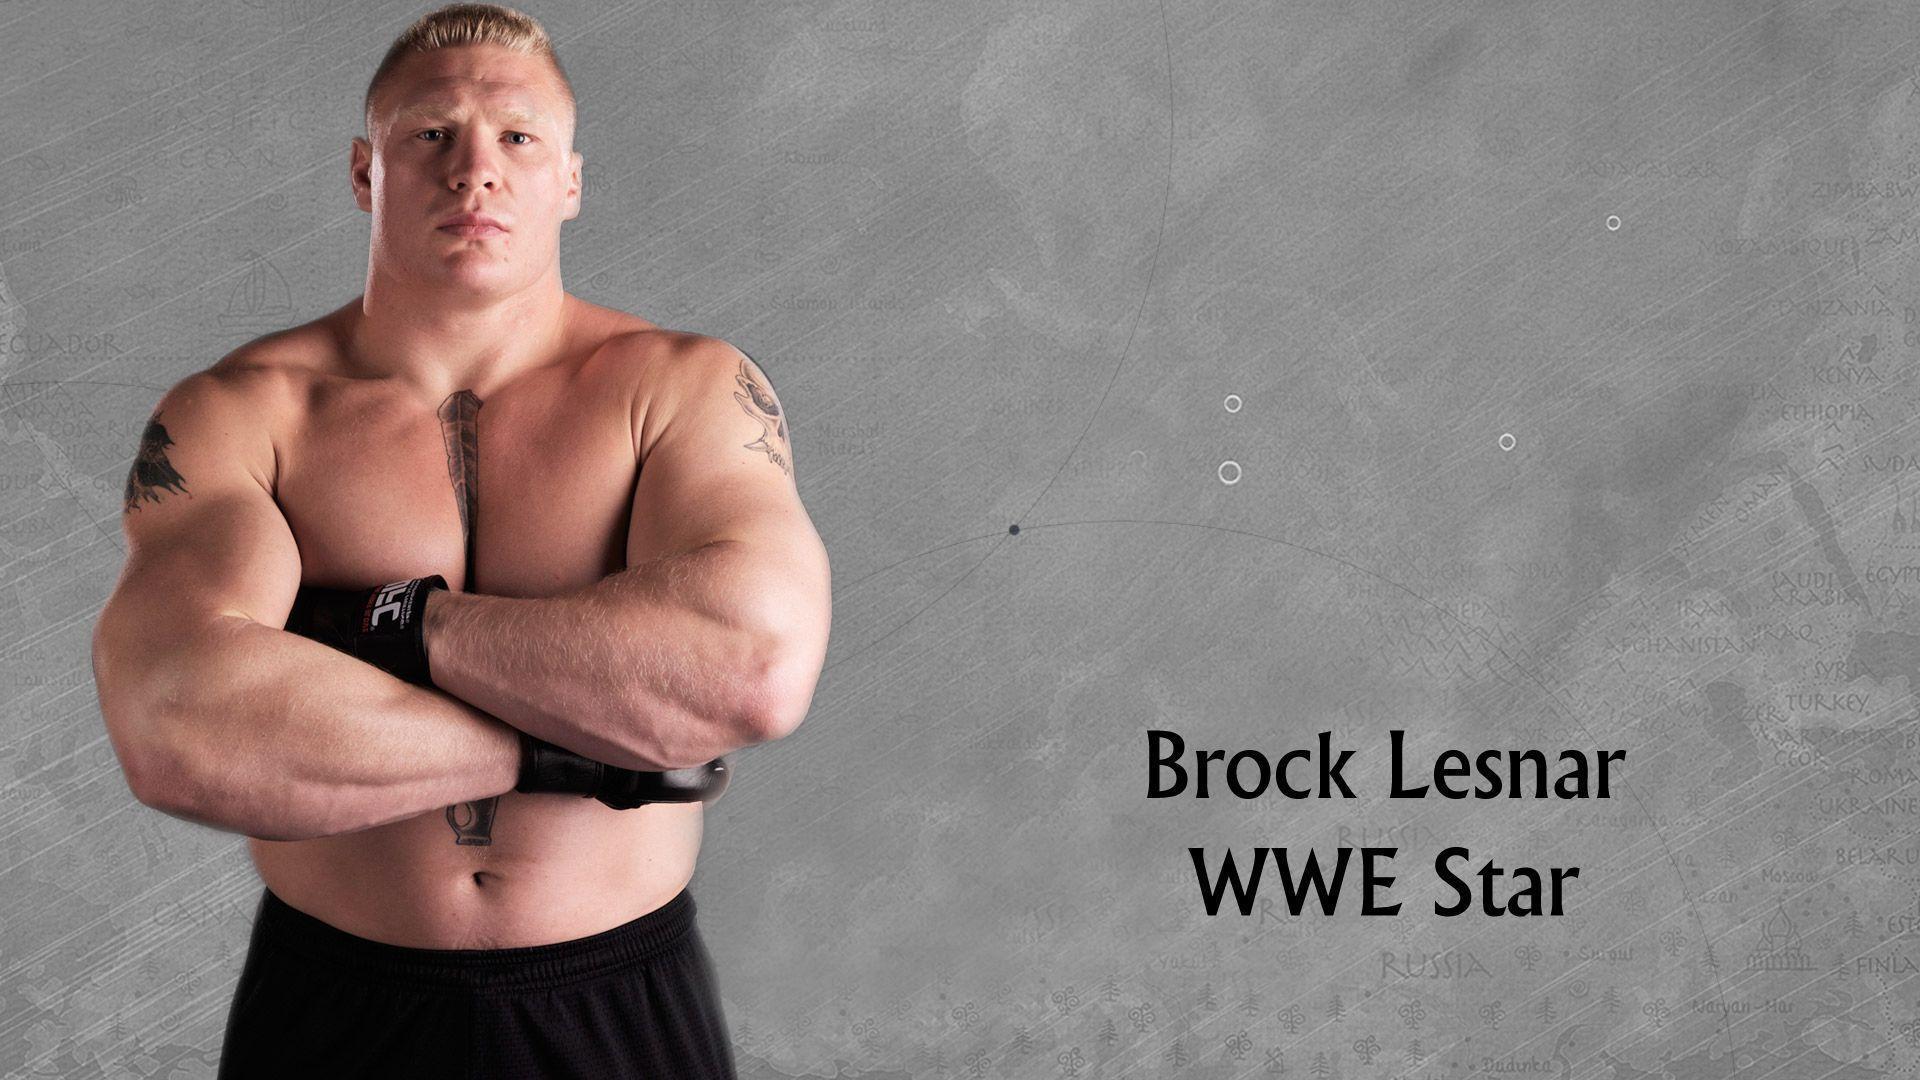 WWE Brock Lesnar 2017 Wallpapers - Wallpaper Cave